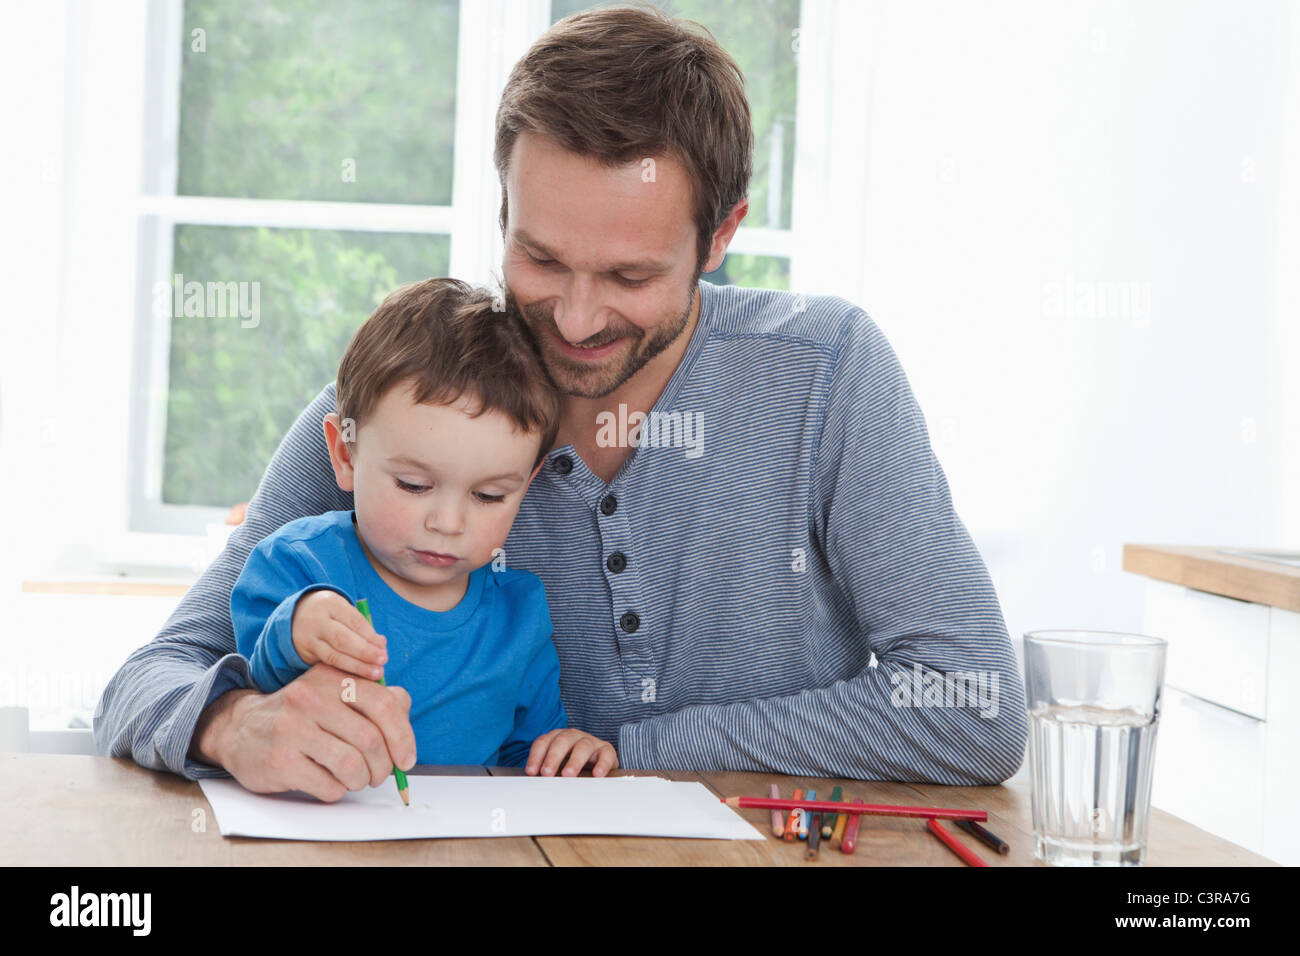 Germany, Bavaria, Munich, père et fils (2-3 ans) peinture photo dans la cuisine Banque D'Images